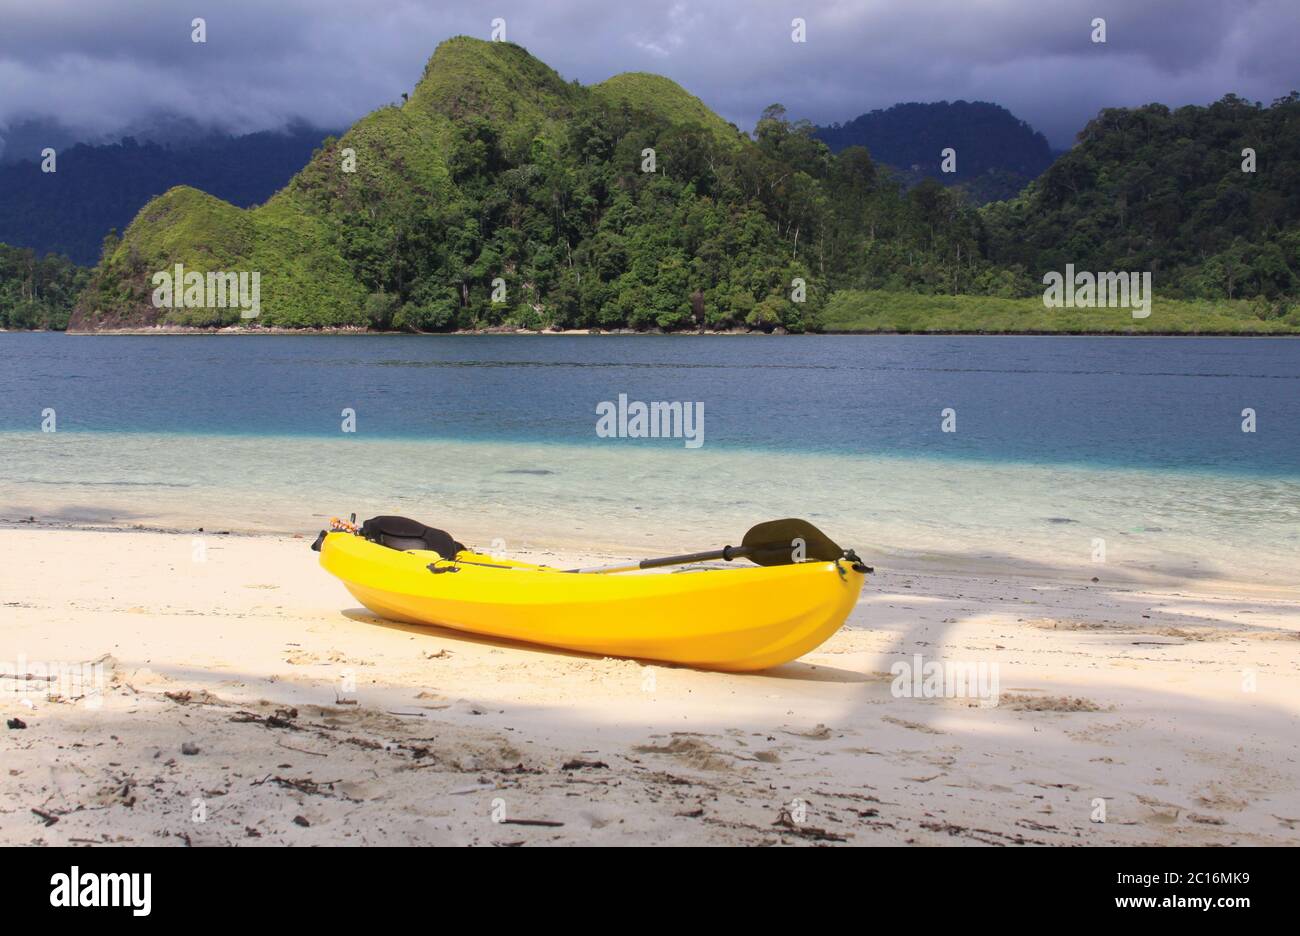 Gelbes Kajak isoliert auf Sand, am Strand des exotischen tropischen Reiseziels Pasumpahan Insel, Padang, West Sumatra, Indonesien Stockfoto